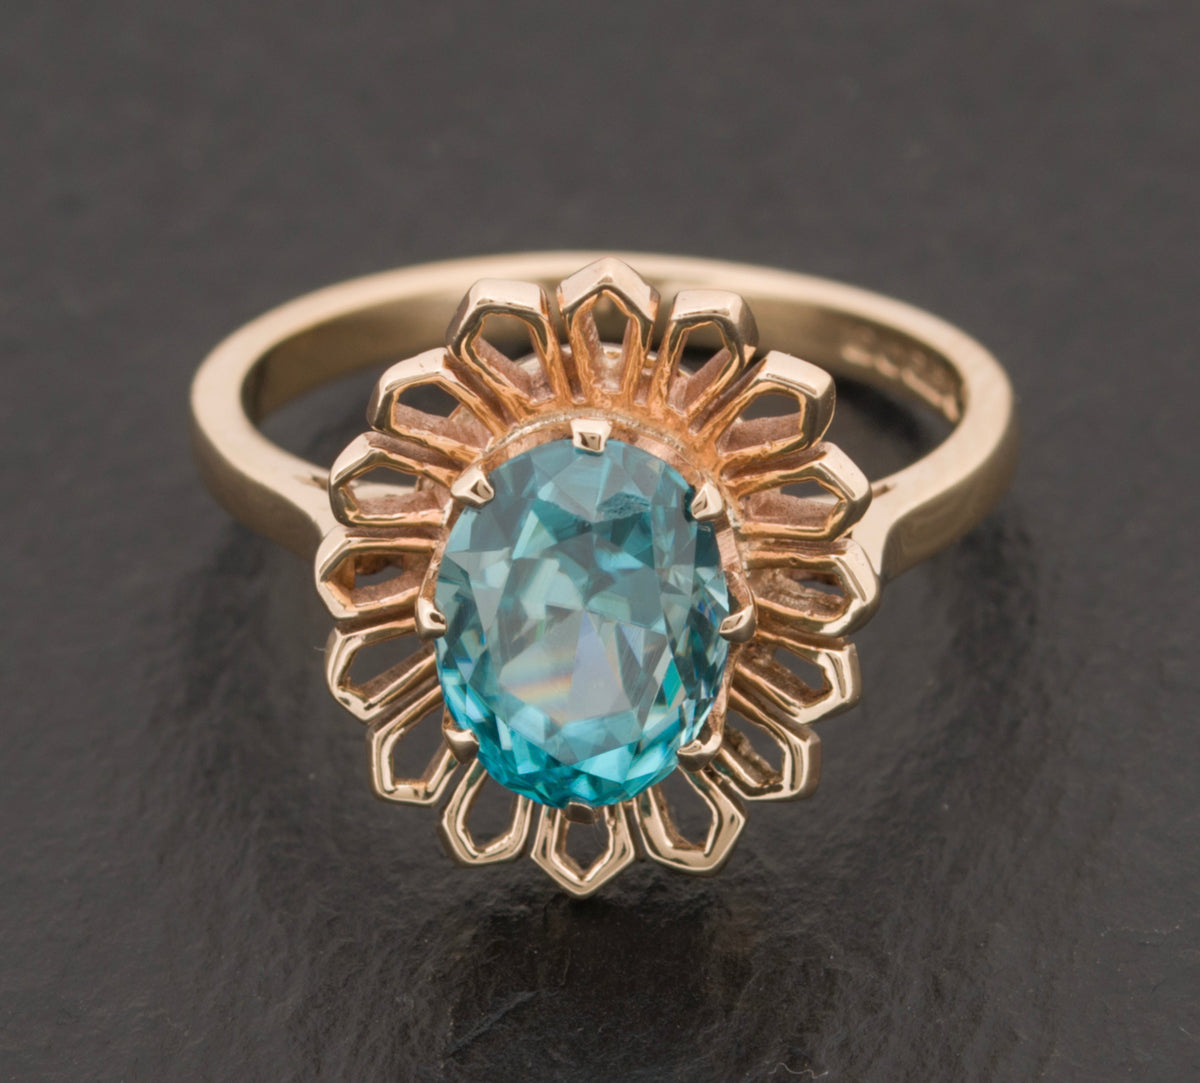 Vintage 9ct Gold & Natural Blue Zircon Ring 1960's Modernist Design (A1527)